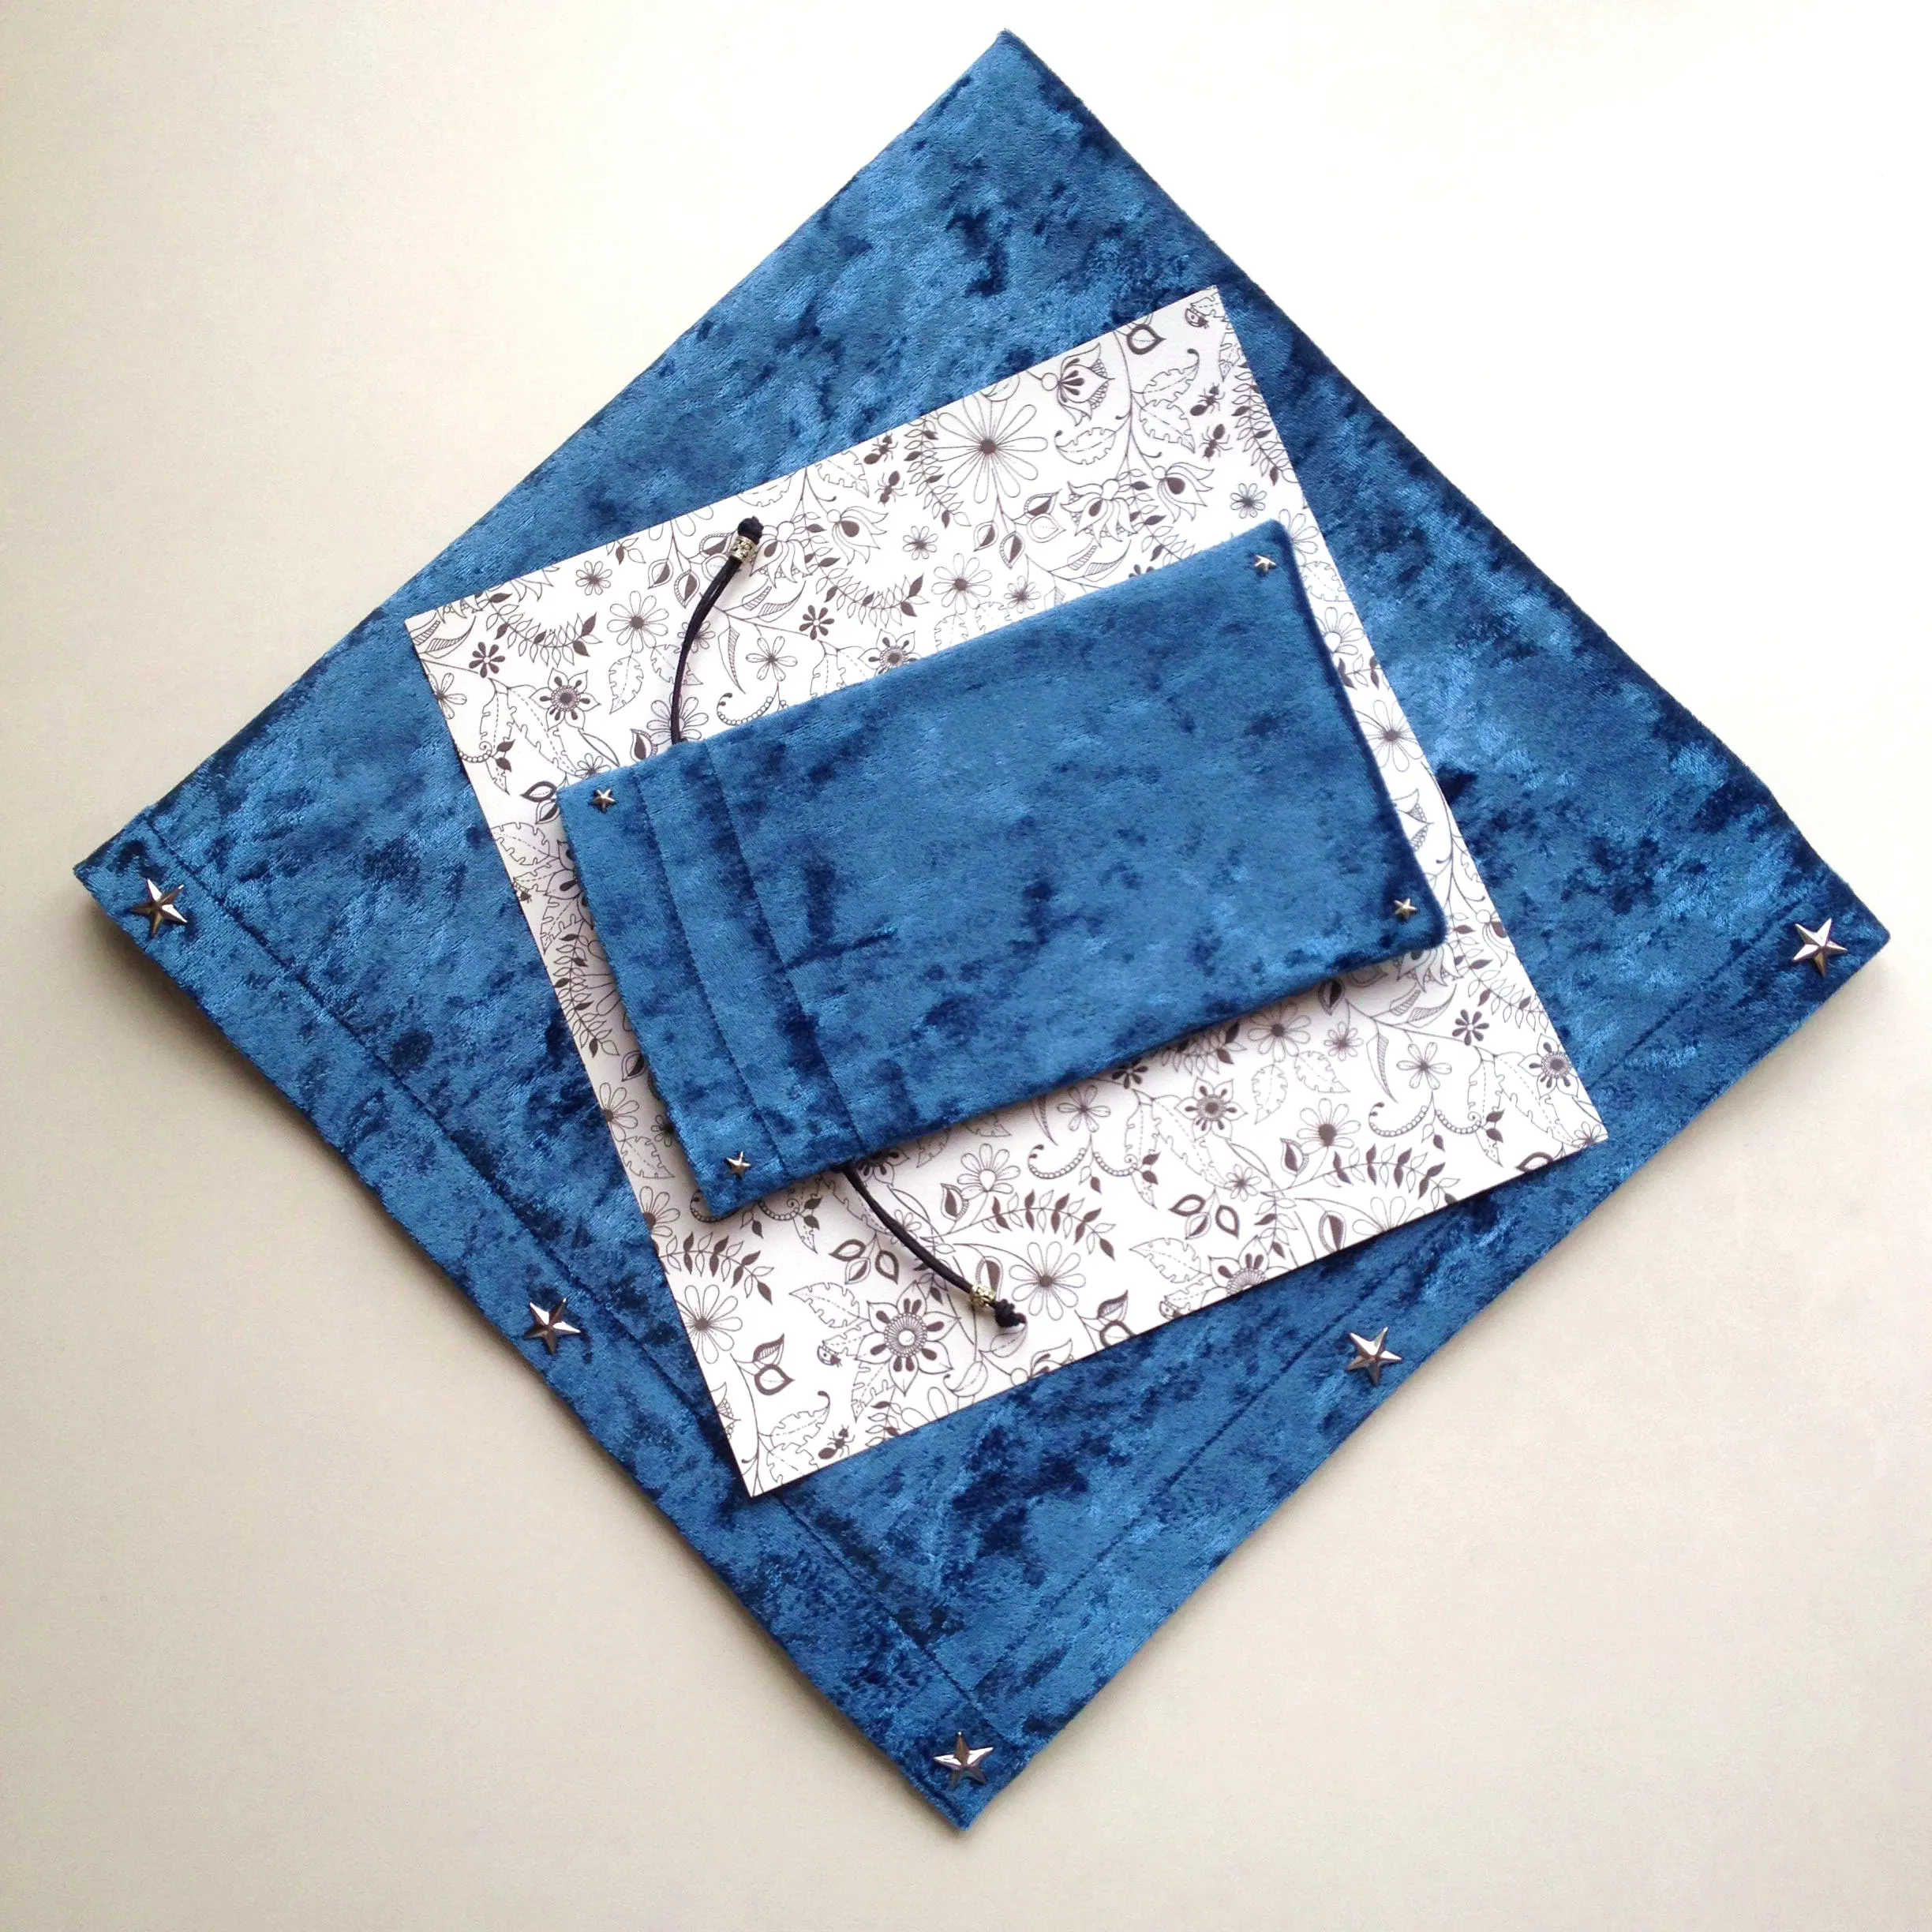 65x65 см темно-синий/фиолетовый/черный бархат Таро скатерть флокирование ткань пентаграмма стиль настольная игра, карты Таро